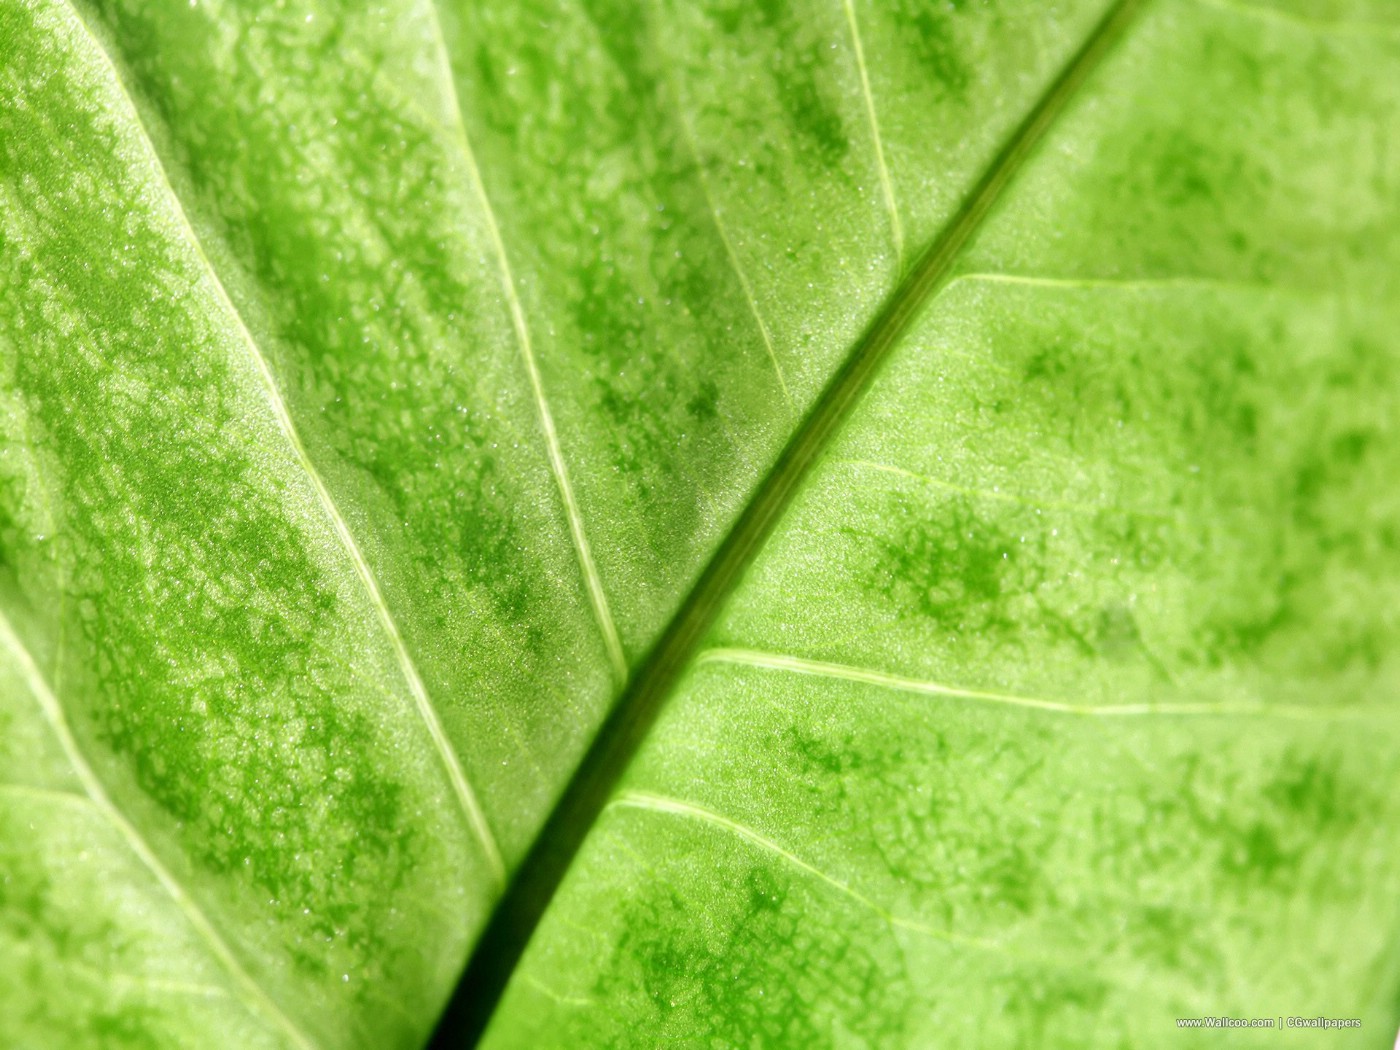 壁纸1400x1050高清晰植物绿叶壁纸 高清晰植物绿叶壁纸 高清晰植物绿叶图片 高清晰植物绿叶素材 植物壁纸 植物图库 植物图片素材桌面壁纸